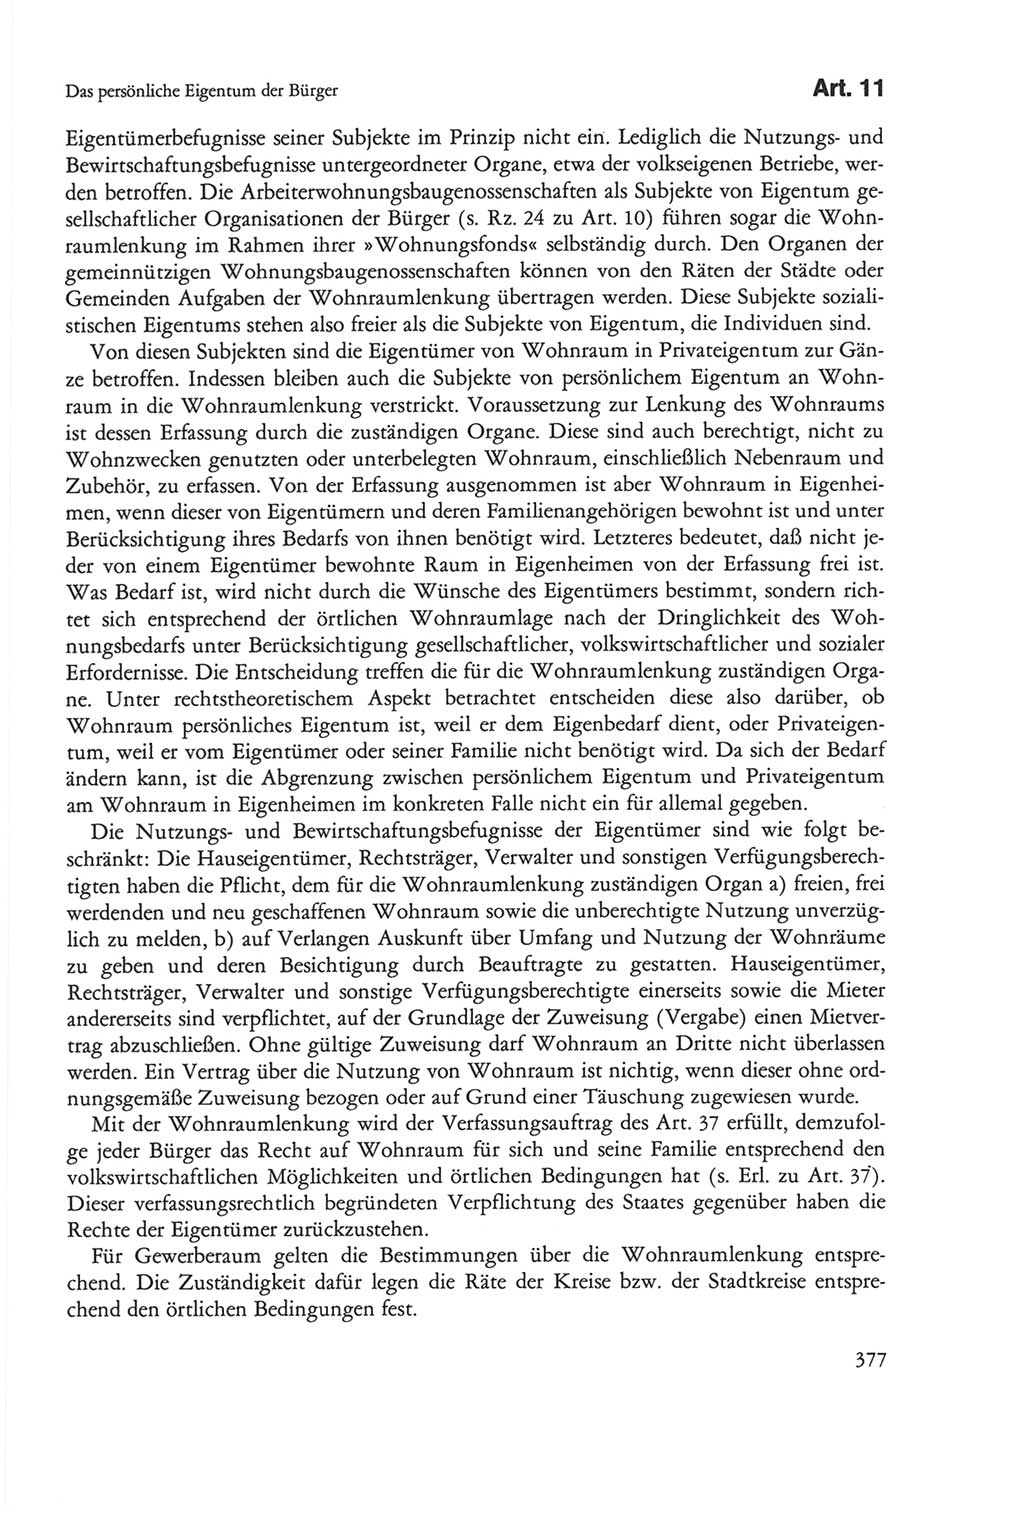 Die sozialistische Verfassung der Deutschen Demokratischen Republik (DDR), Kommentar 1982, Seite 377 (Soz. Verf. DDR Komm. 1982, S. 377)